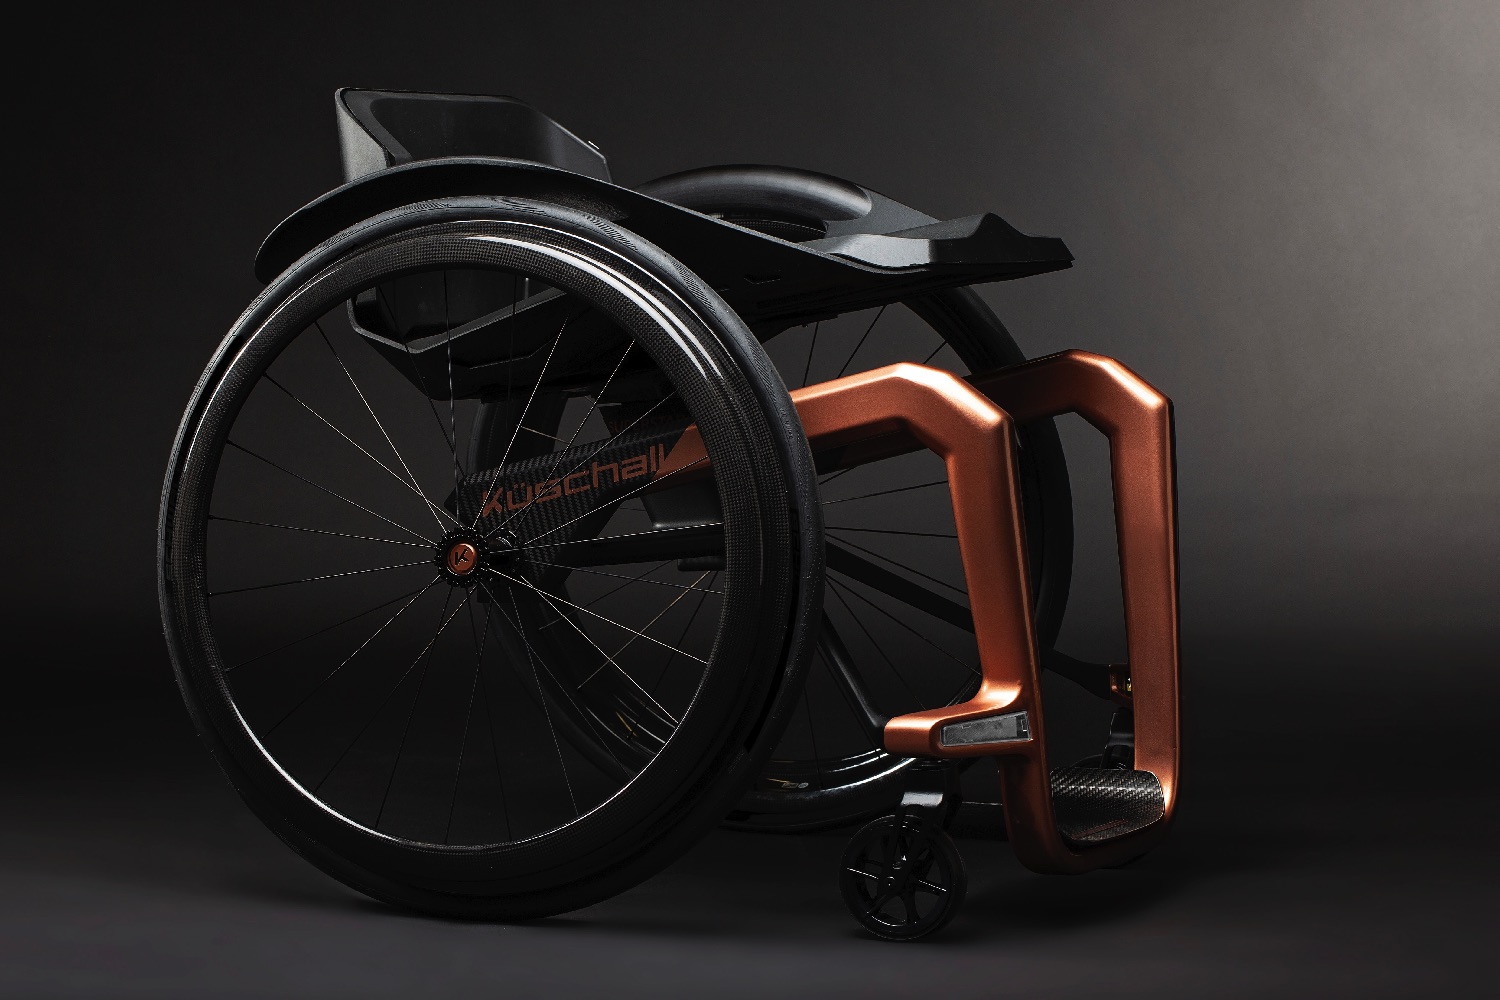 graphene skinned wheelchair superstar 1